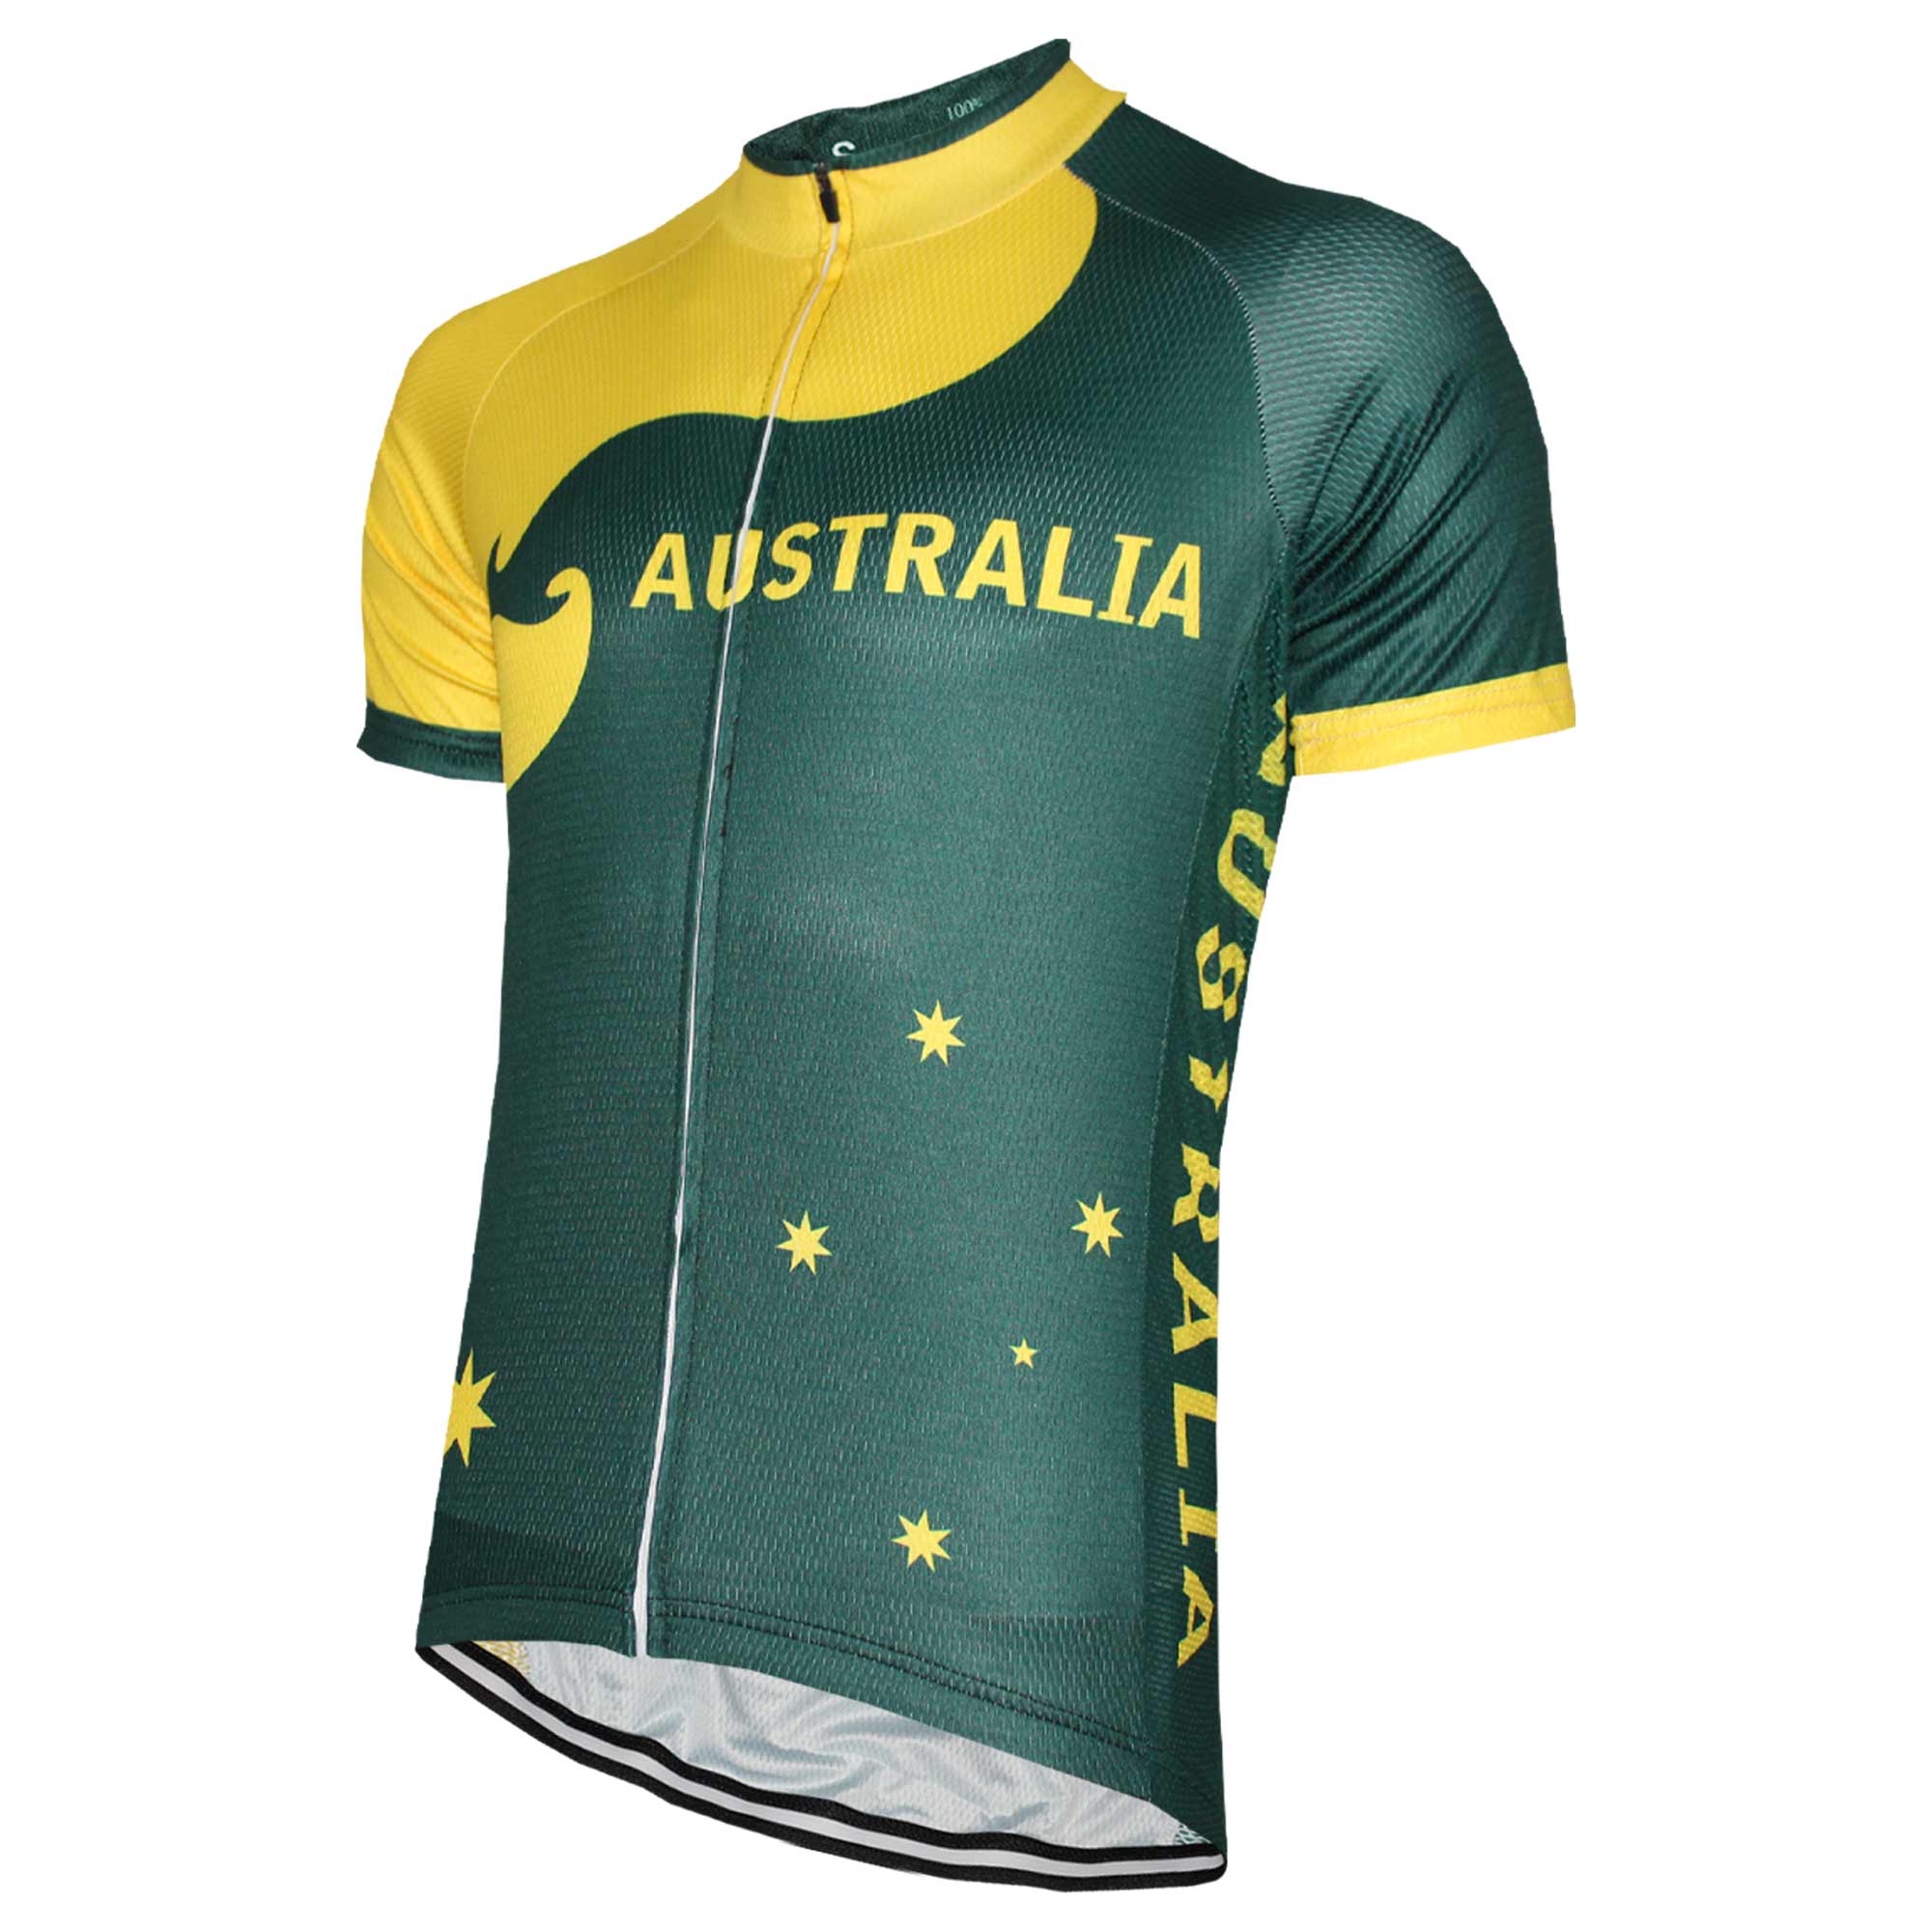 Australia Cycling Jersey.